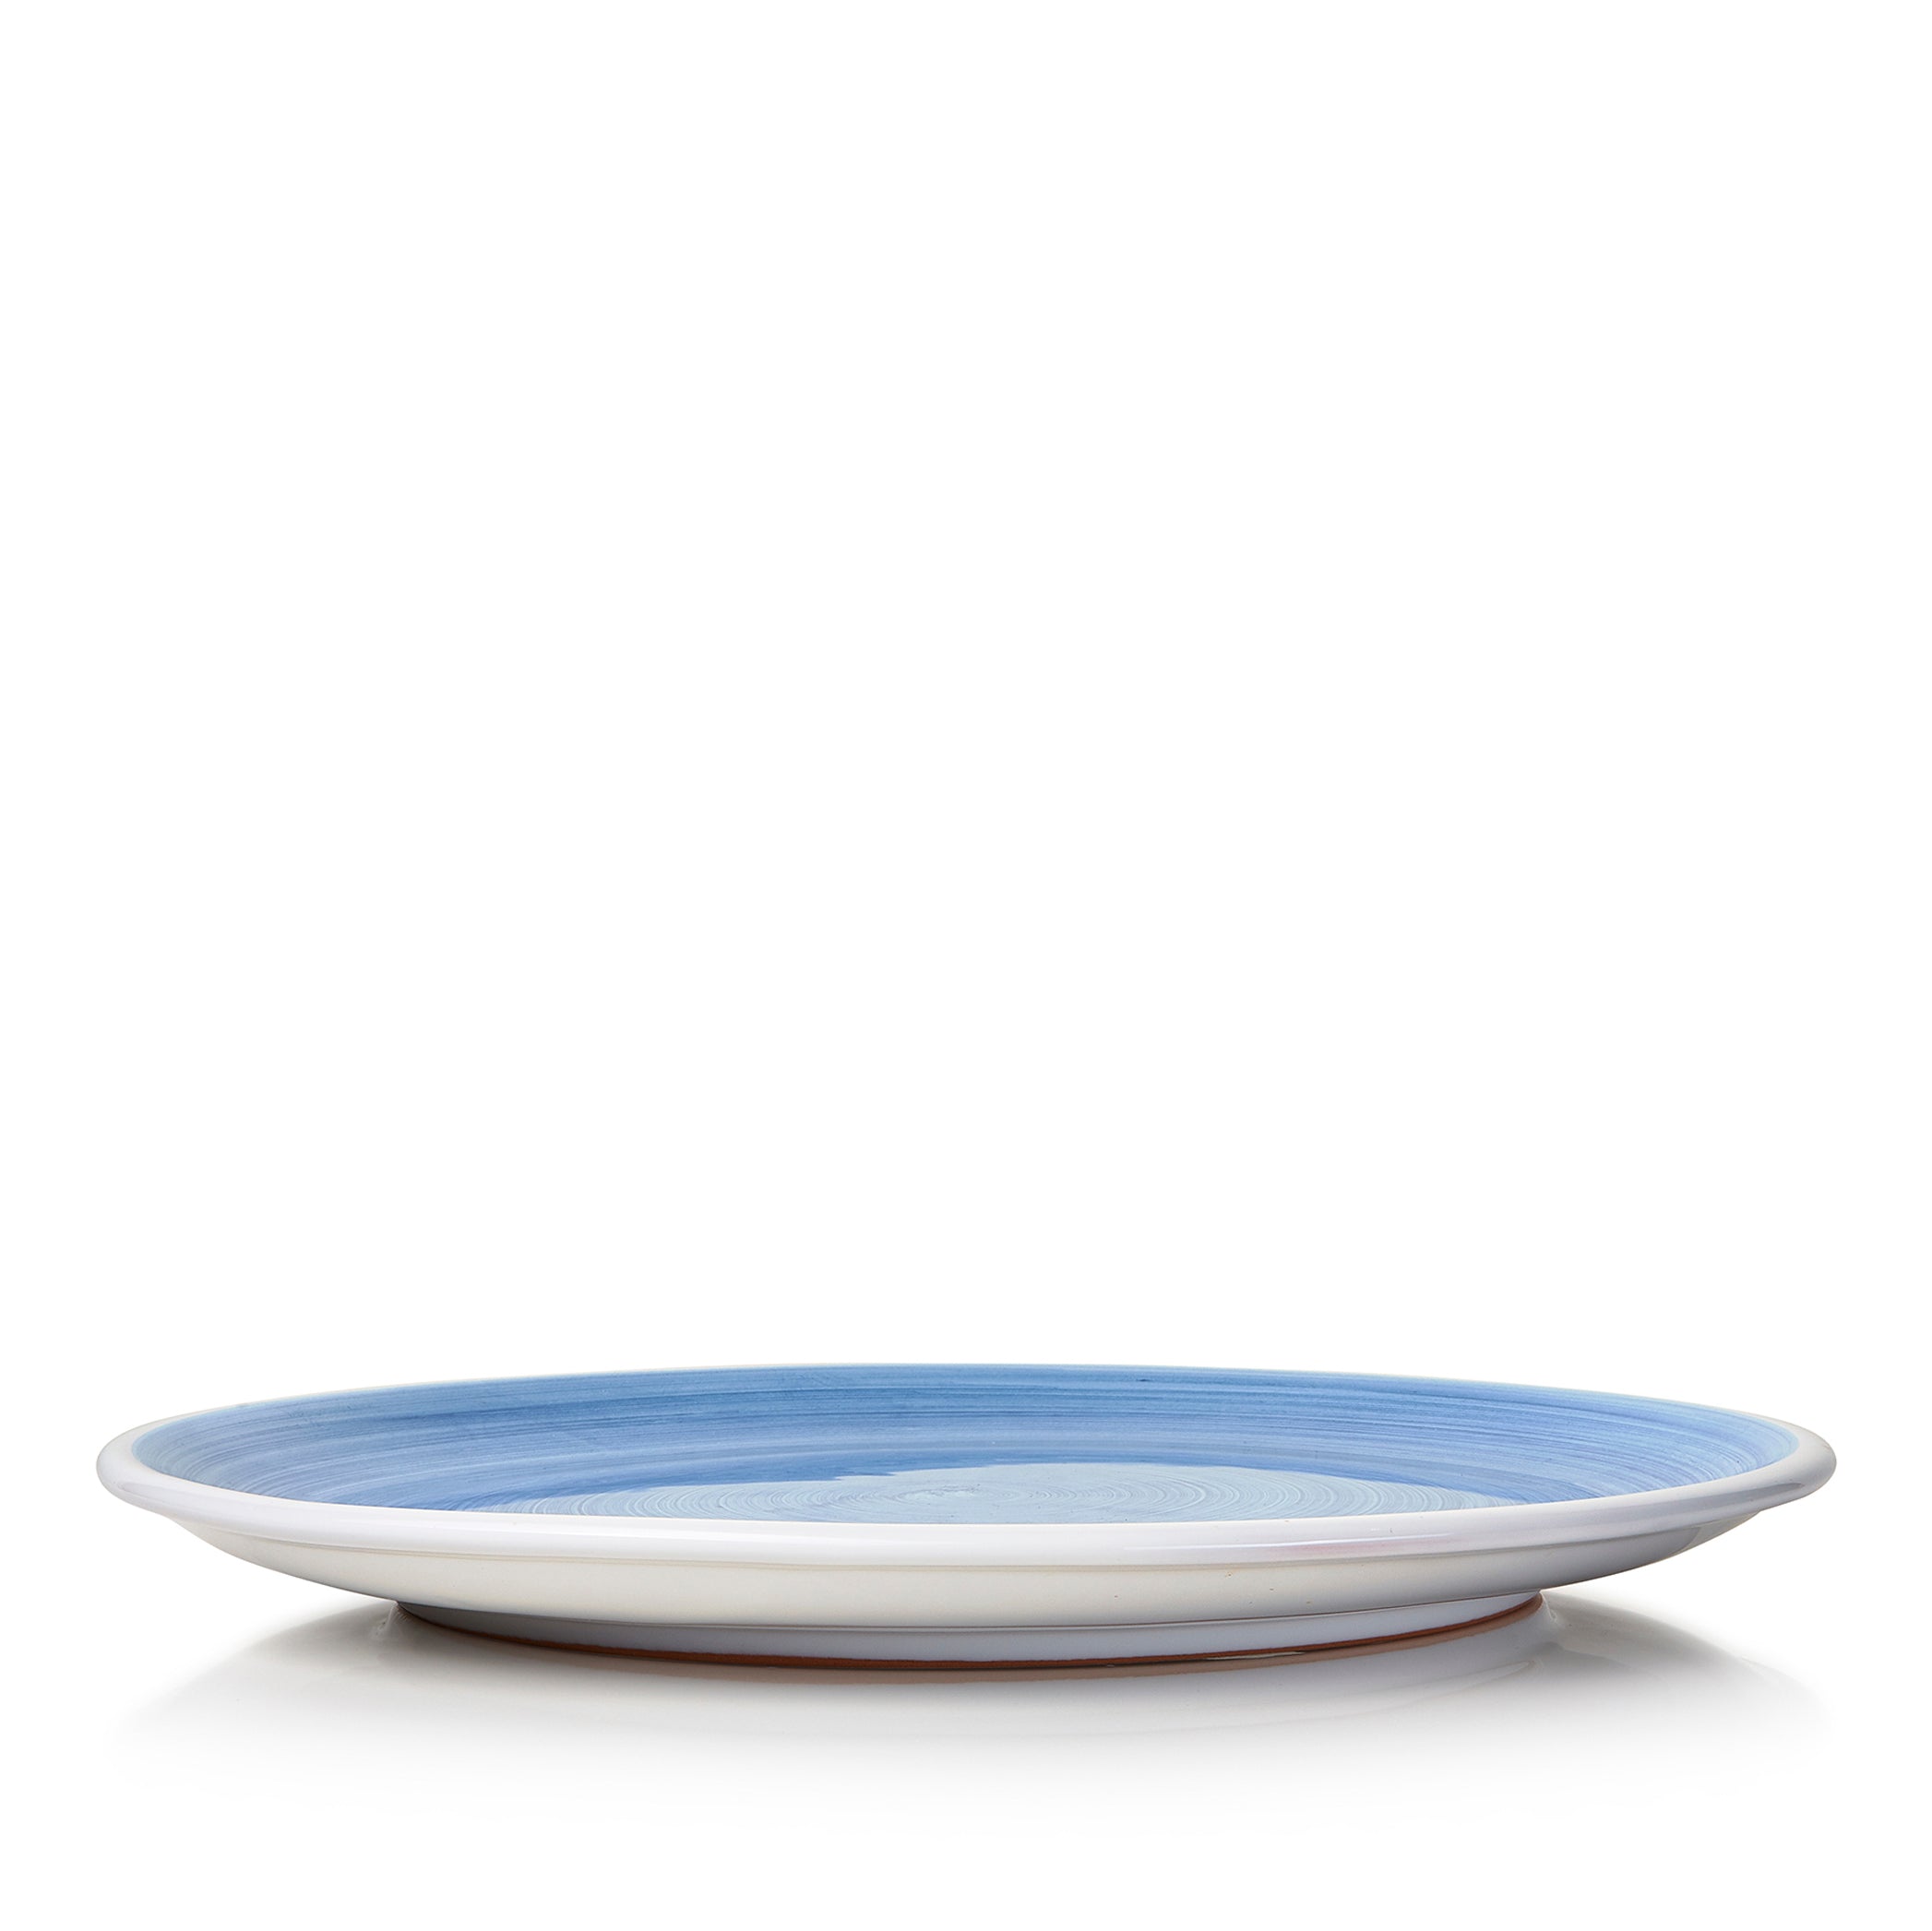 S&B 'Brushed' Ceramic Dinner Plate in Light Blue, 28cm